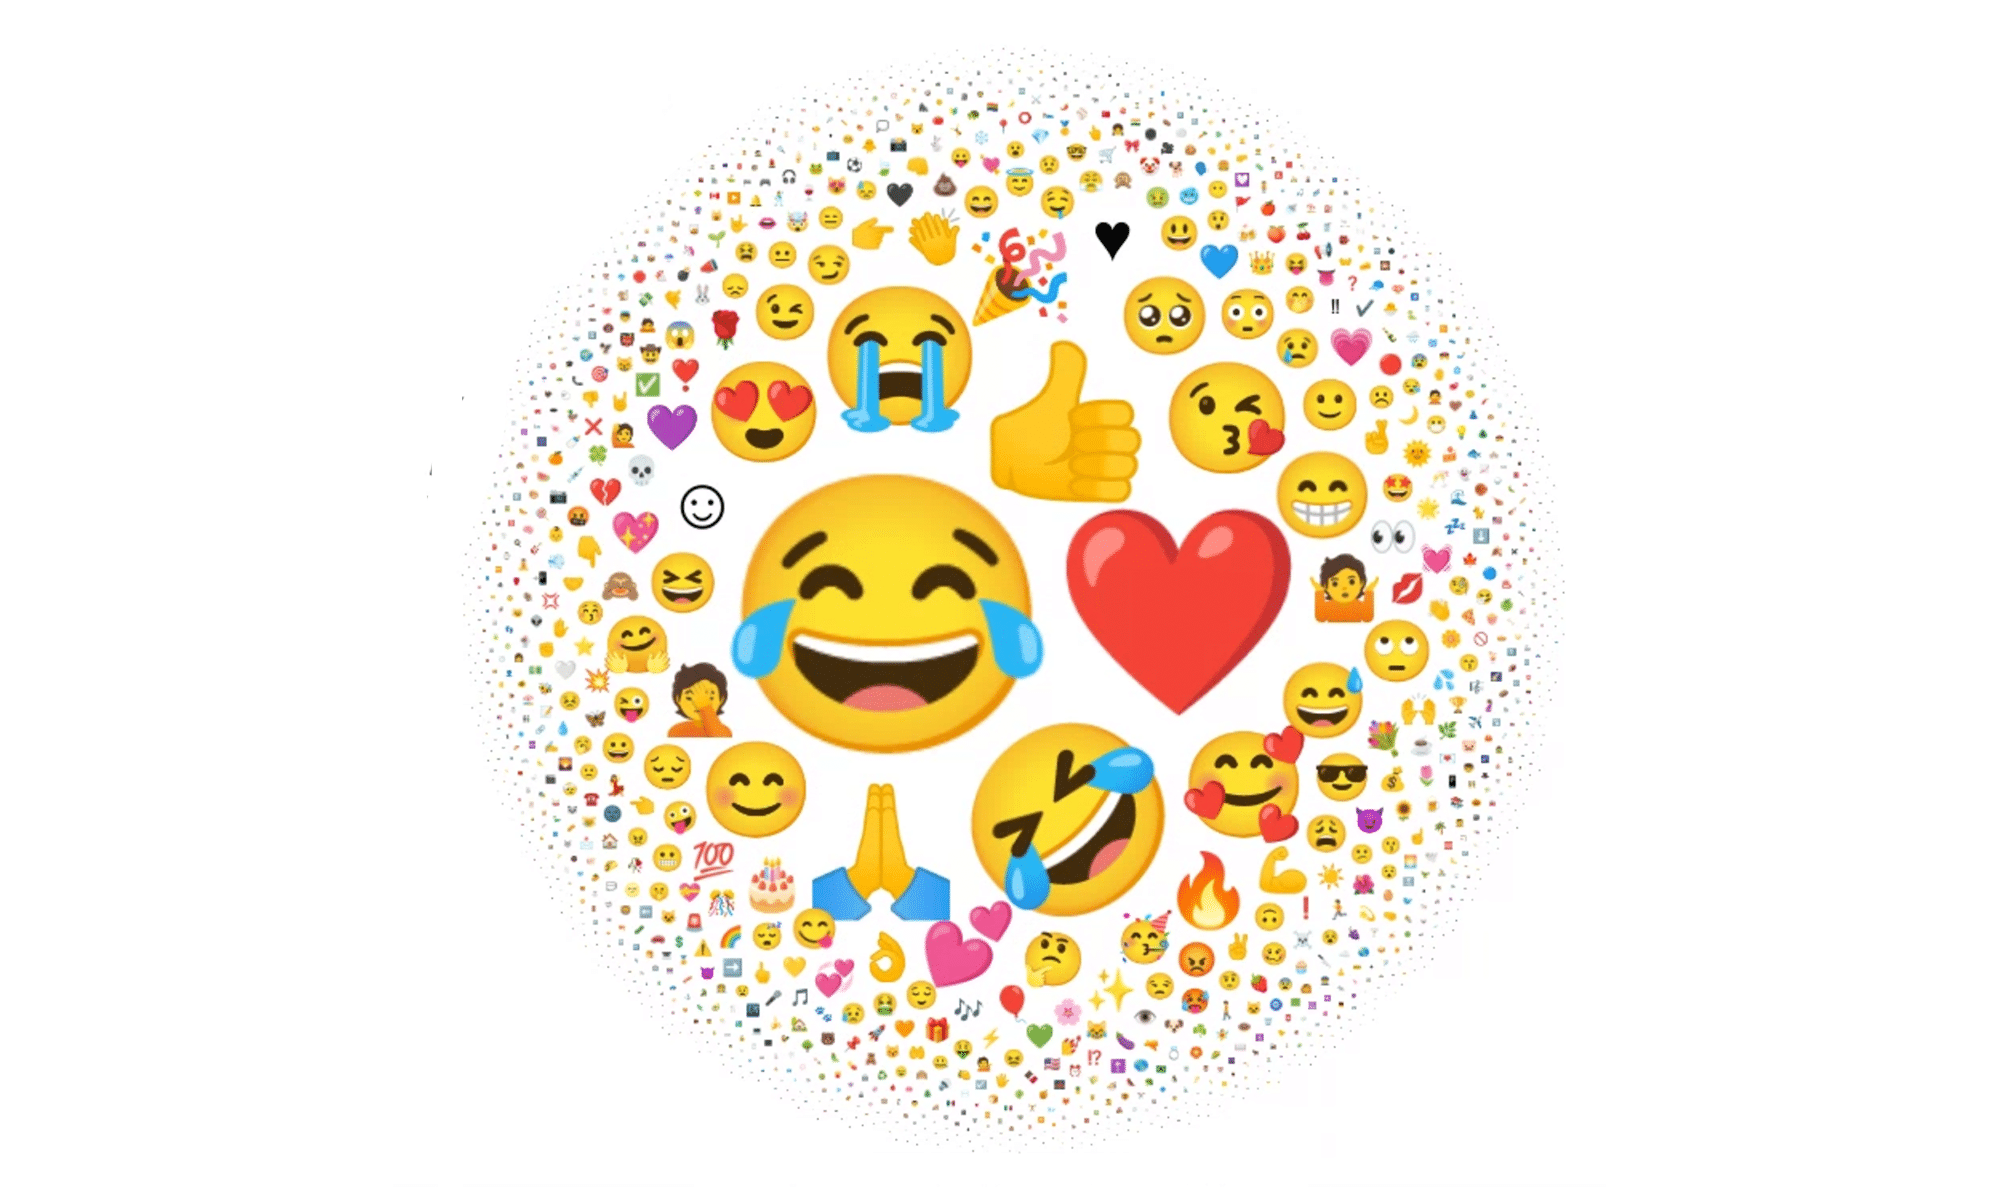 Unicode Consortium Popular Emoji 2021